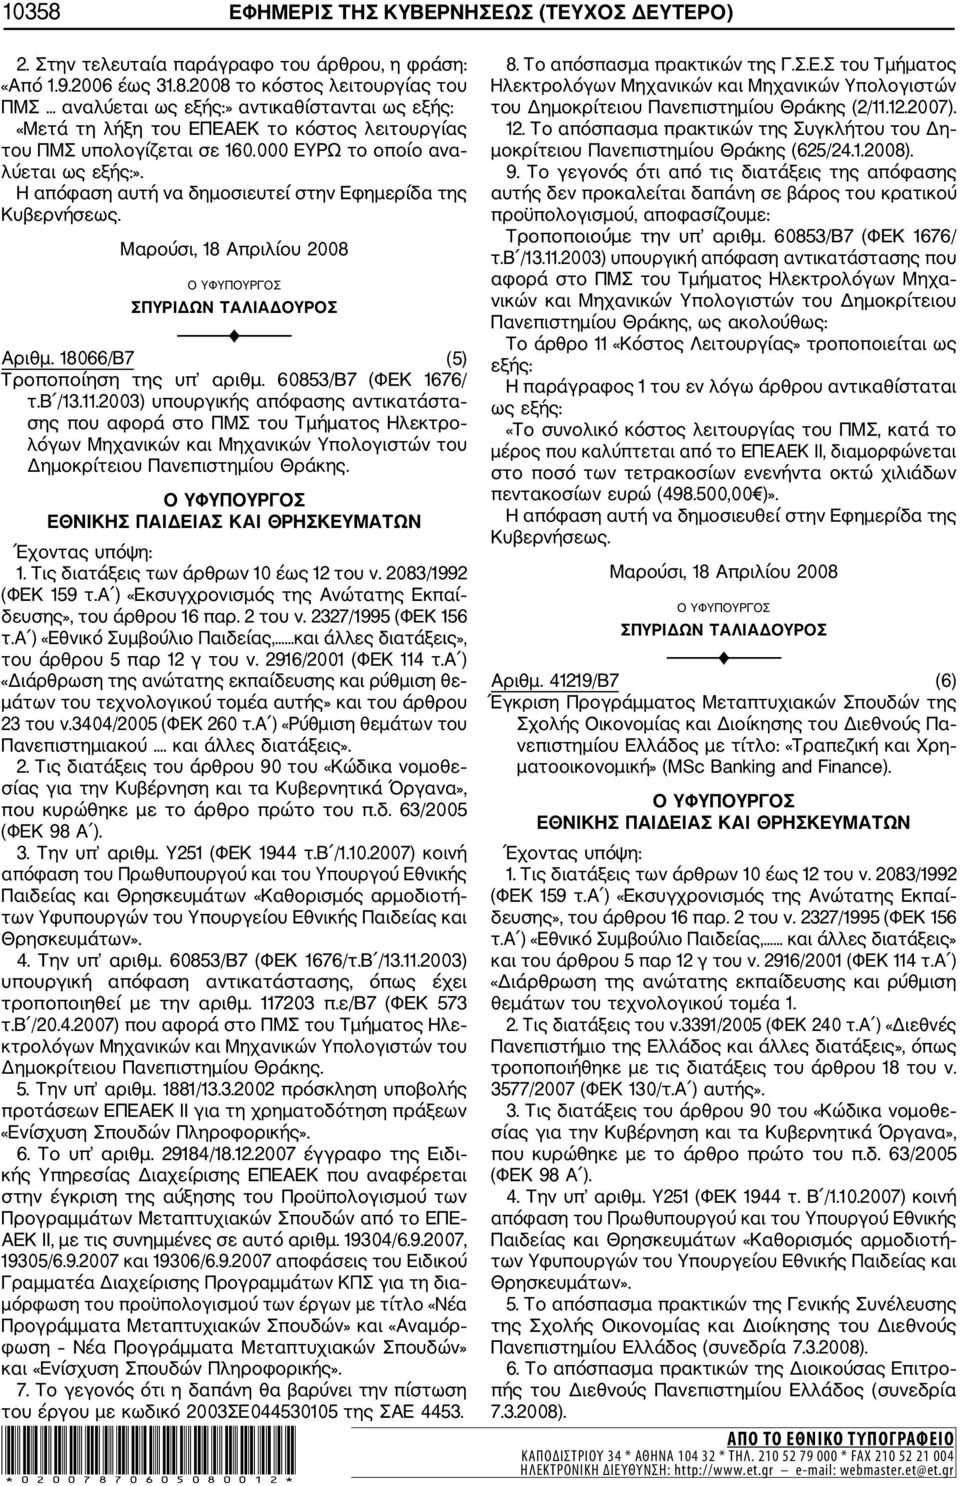 60853/Β7 (ΦΕΚ 1676/ τ.β /13.11.2003) υπουργικής απόφασης αντικατάστα σης που αφορά στο ΠΜΣ του Τμήματος Ηλεκτρο λόγων Μηχανικών και Μηχανικών Υπολογιστών του Δημοκρίτειου Πανεπιστημίου Θράκης.